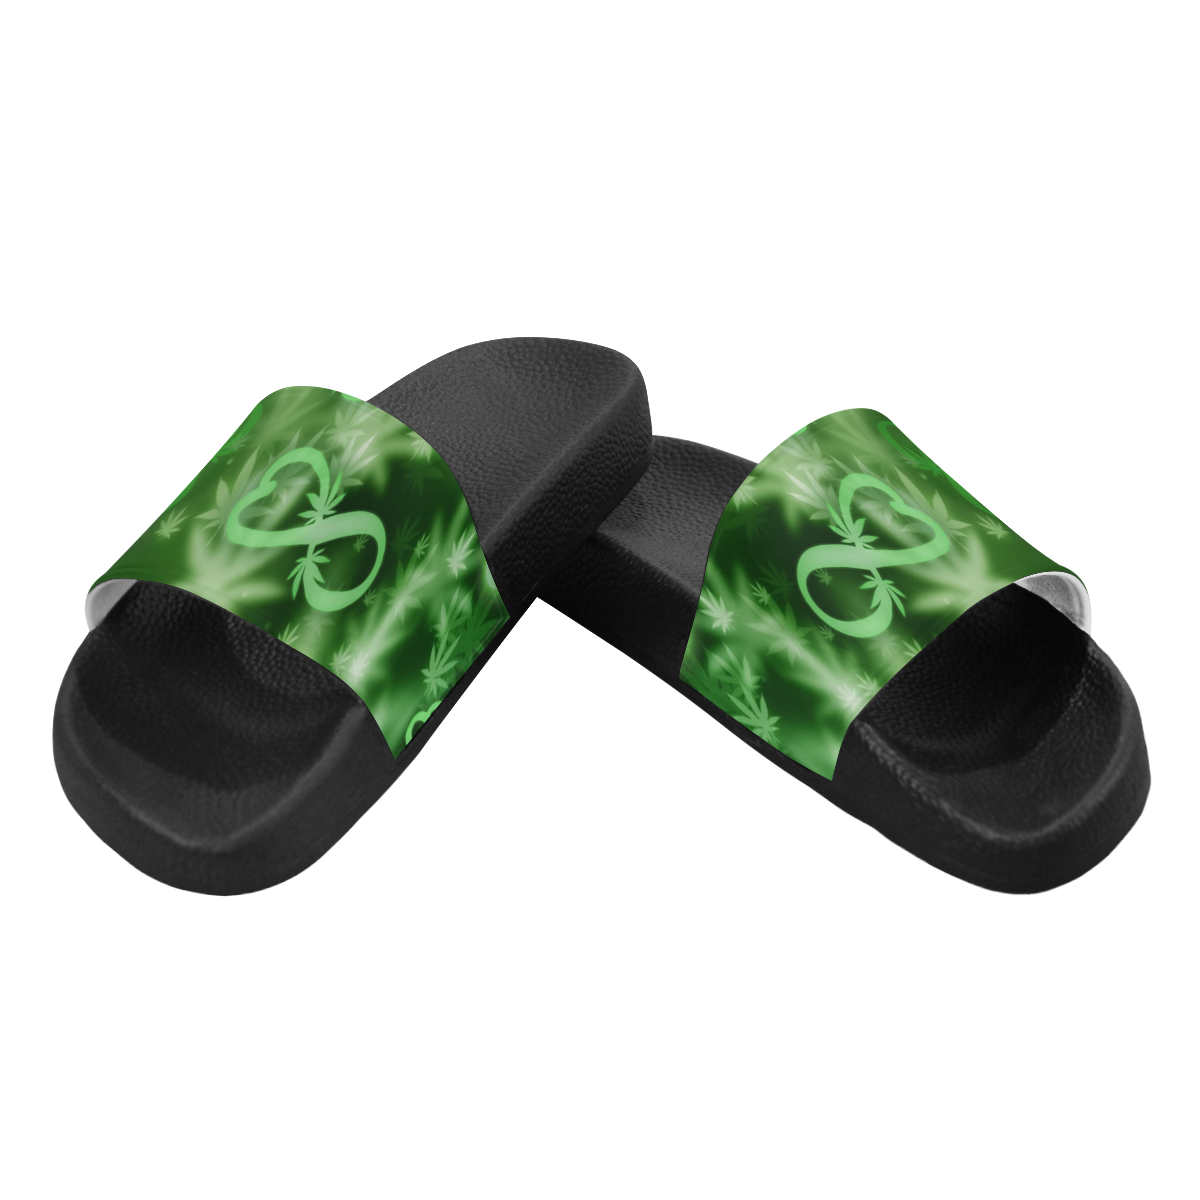 INFINITY GREEN COSMOS Women's Slide Sandals (Model 057)